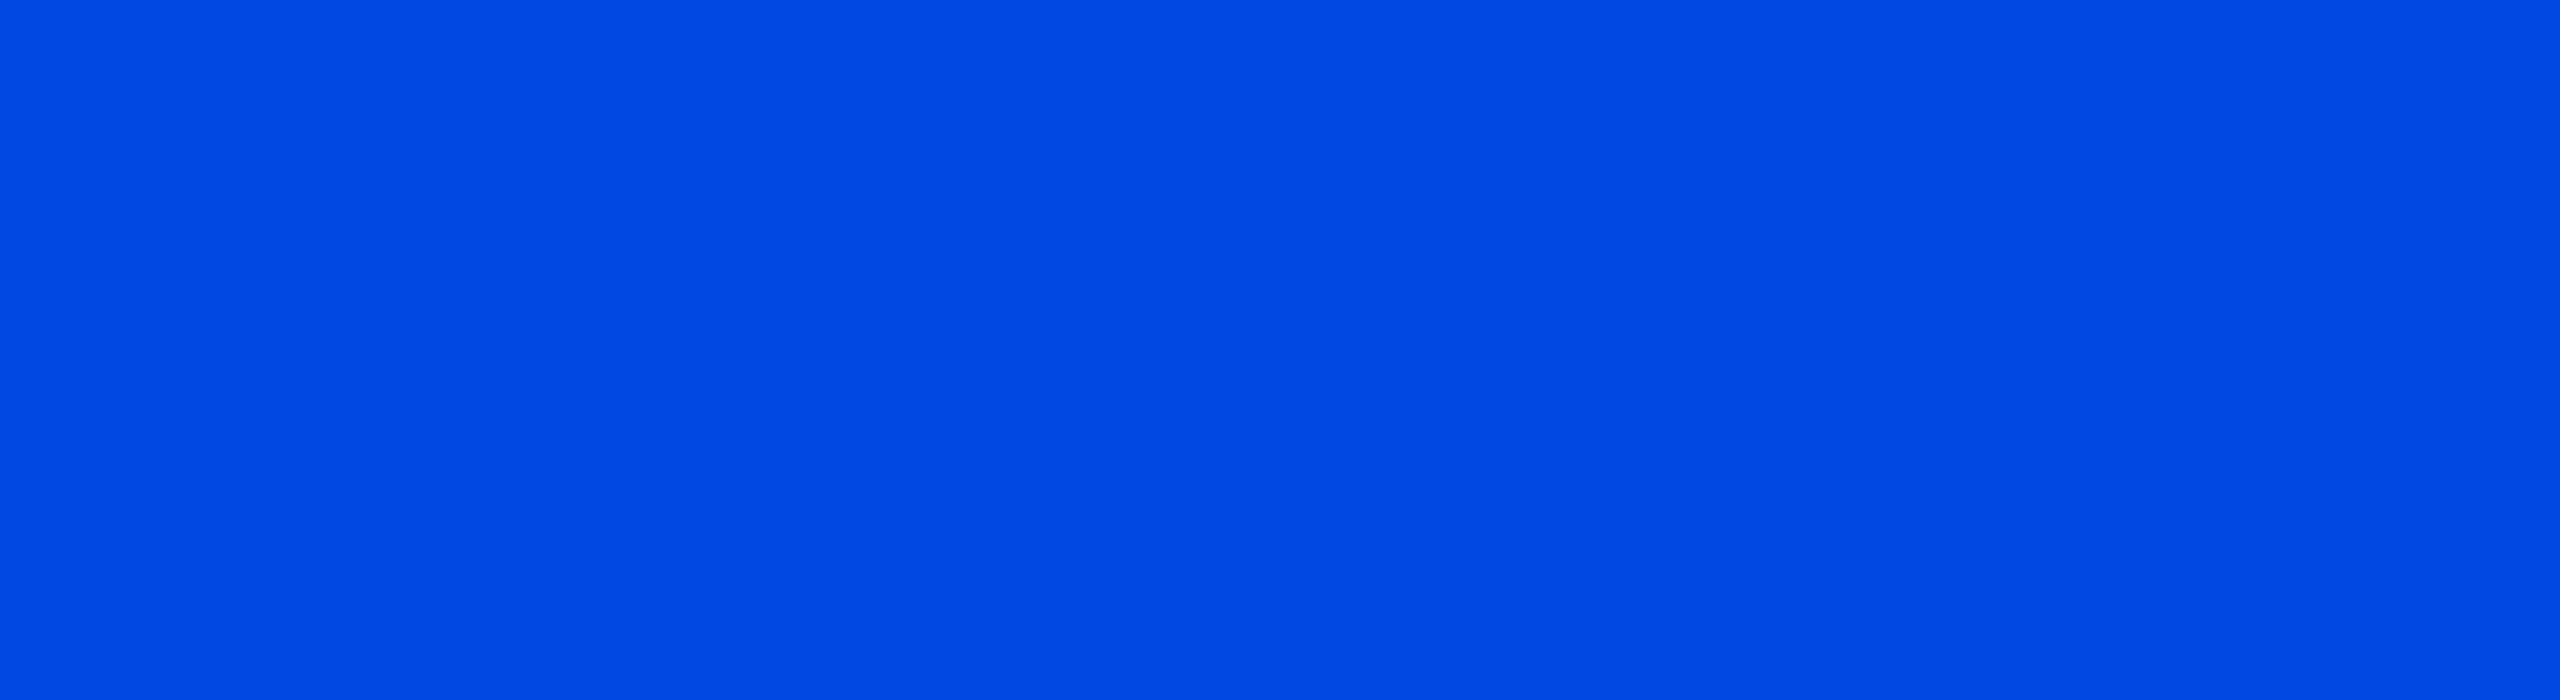 Develey blauer Hintergrund